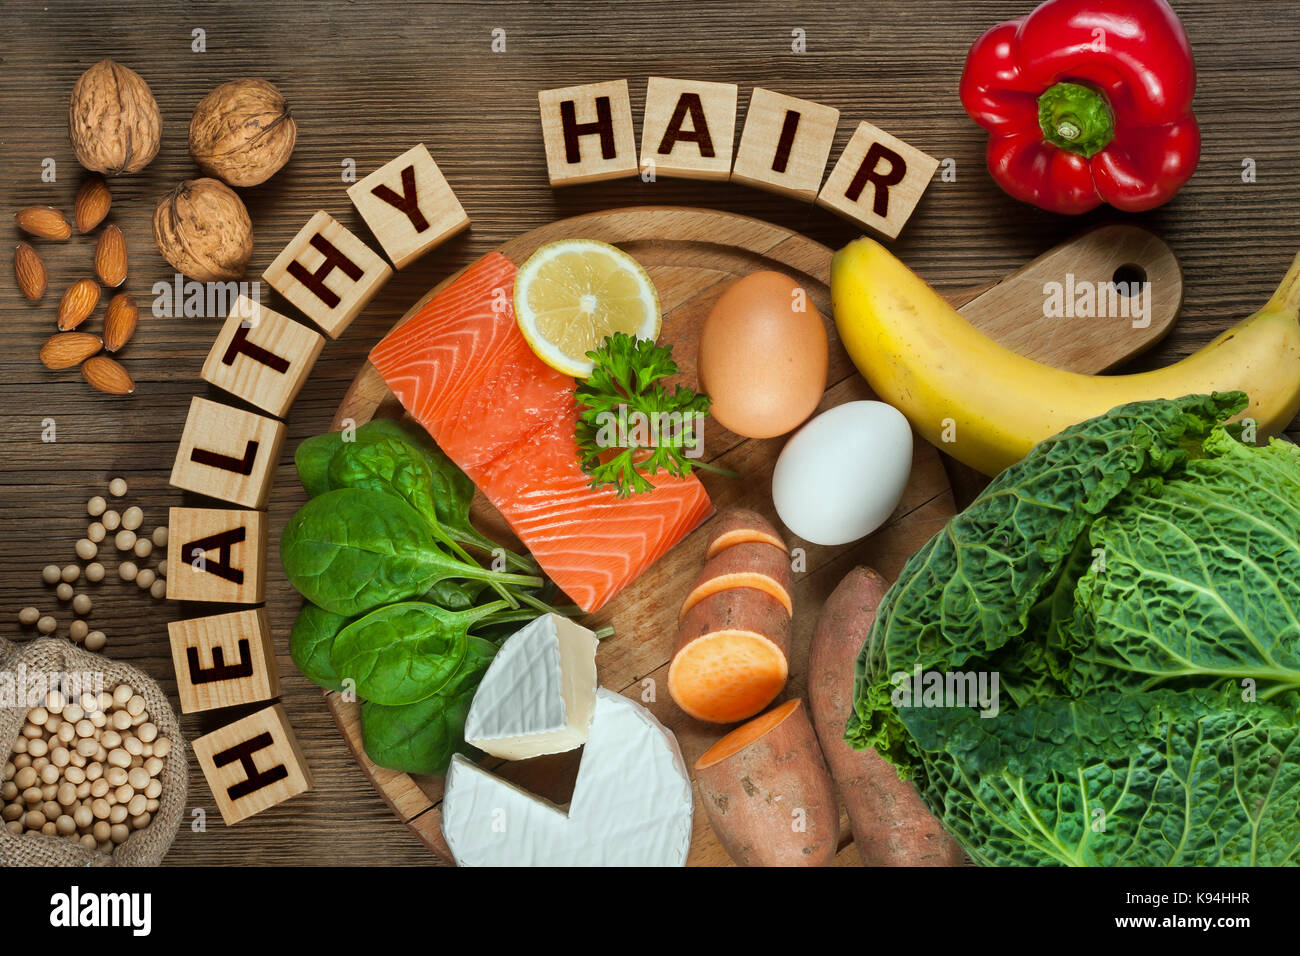 Gesundes Haar Konzept. Besten Lebensmittel für gesundes Haar wie Lachs, Spinat, Mandeln, süsse Kartoffeln, Eier, Nüsse, Kohl, Käse, Paprika, Bananen- und Stockfoto